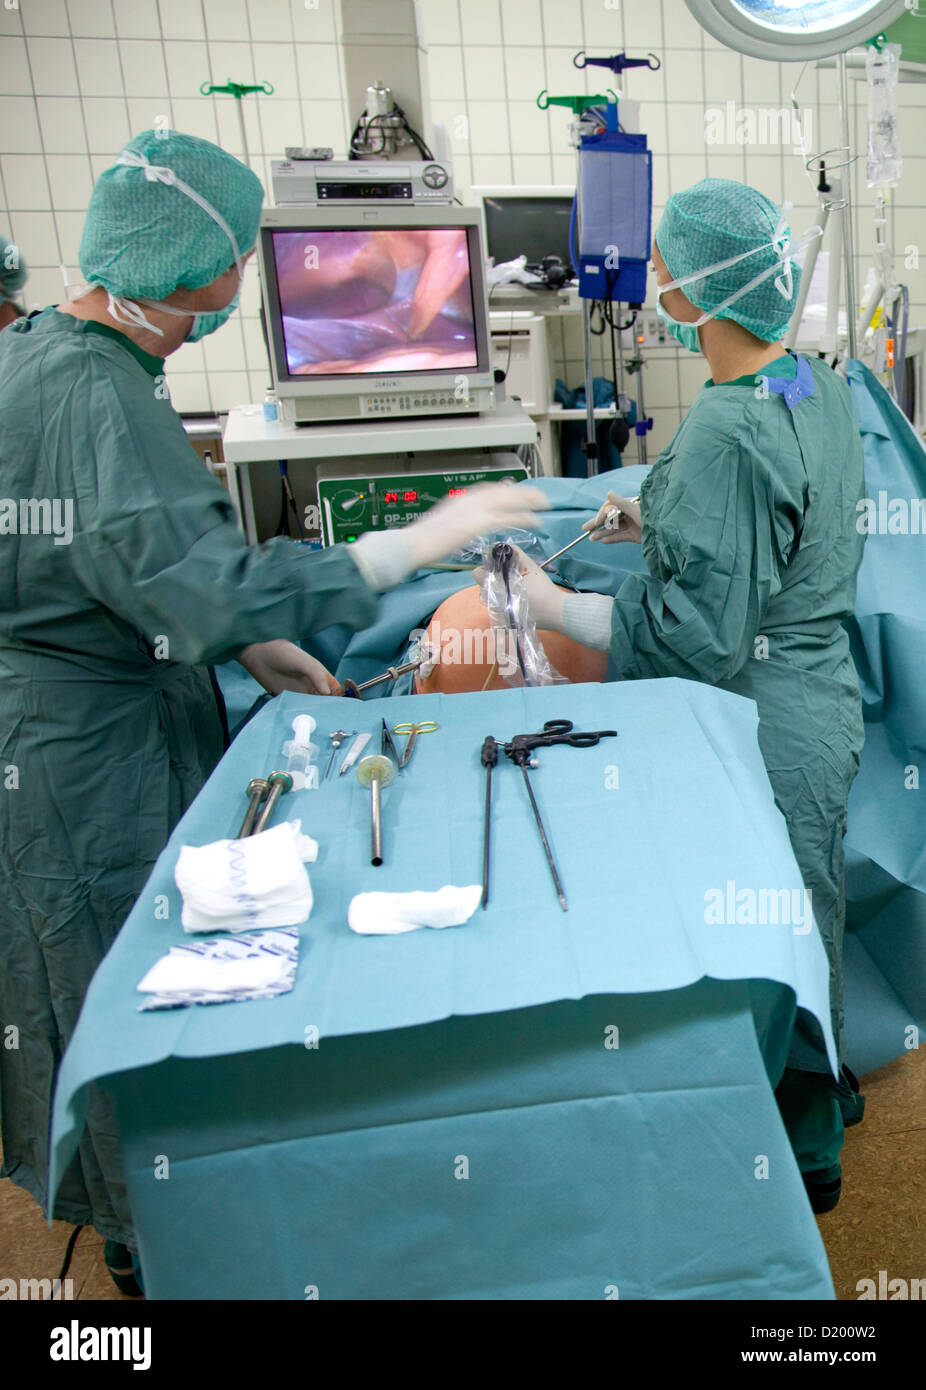 Essen, Deutschland, ein Arzt während einer Gallenblasen-Operation Stockfoto